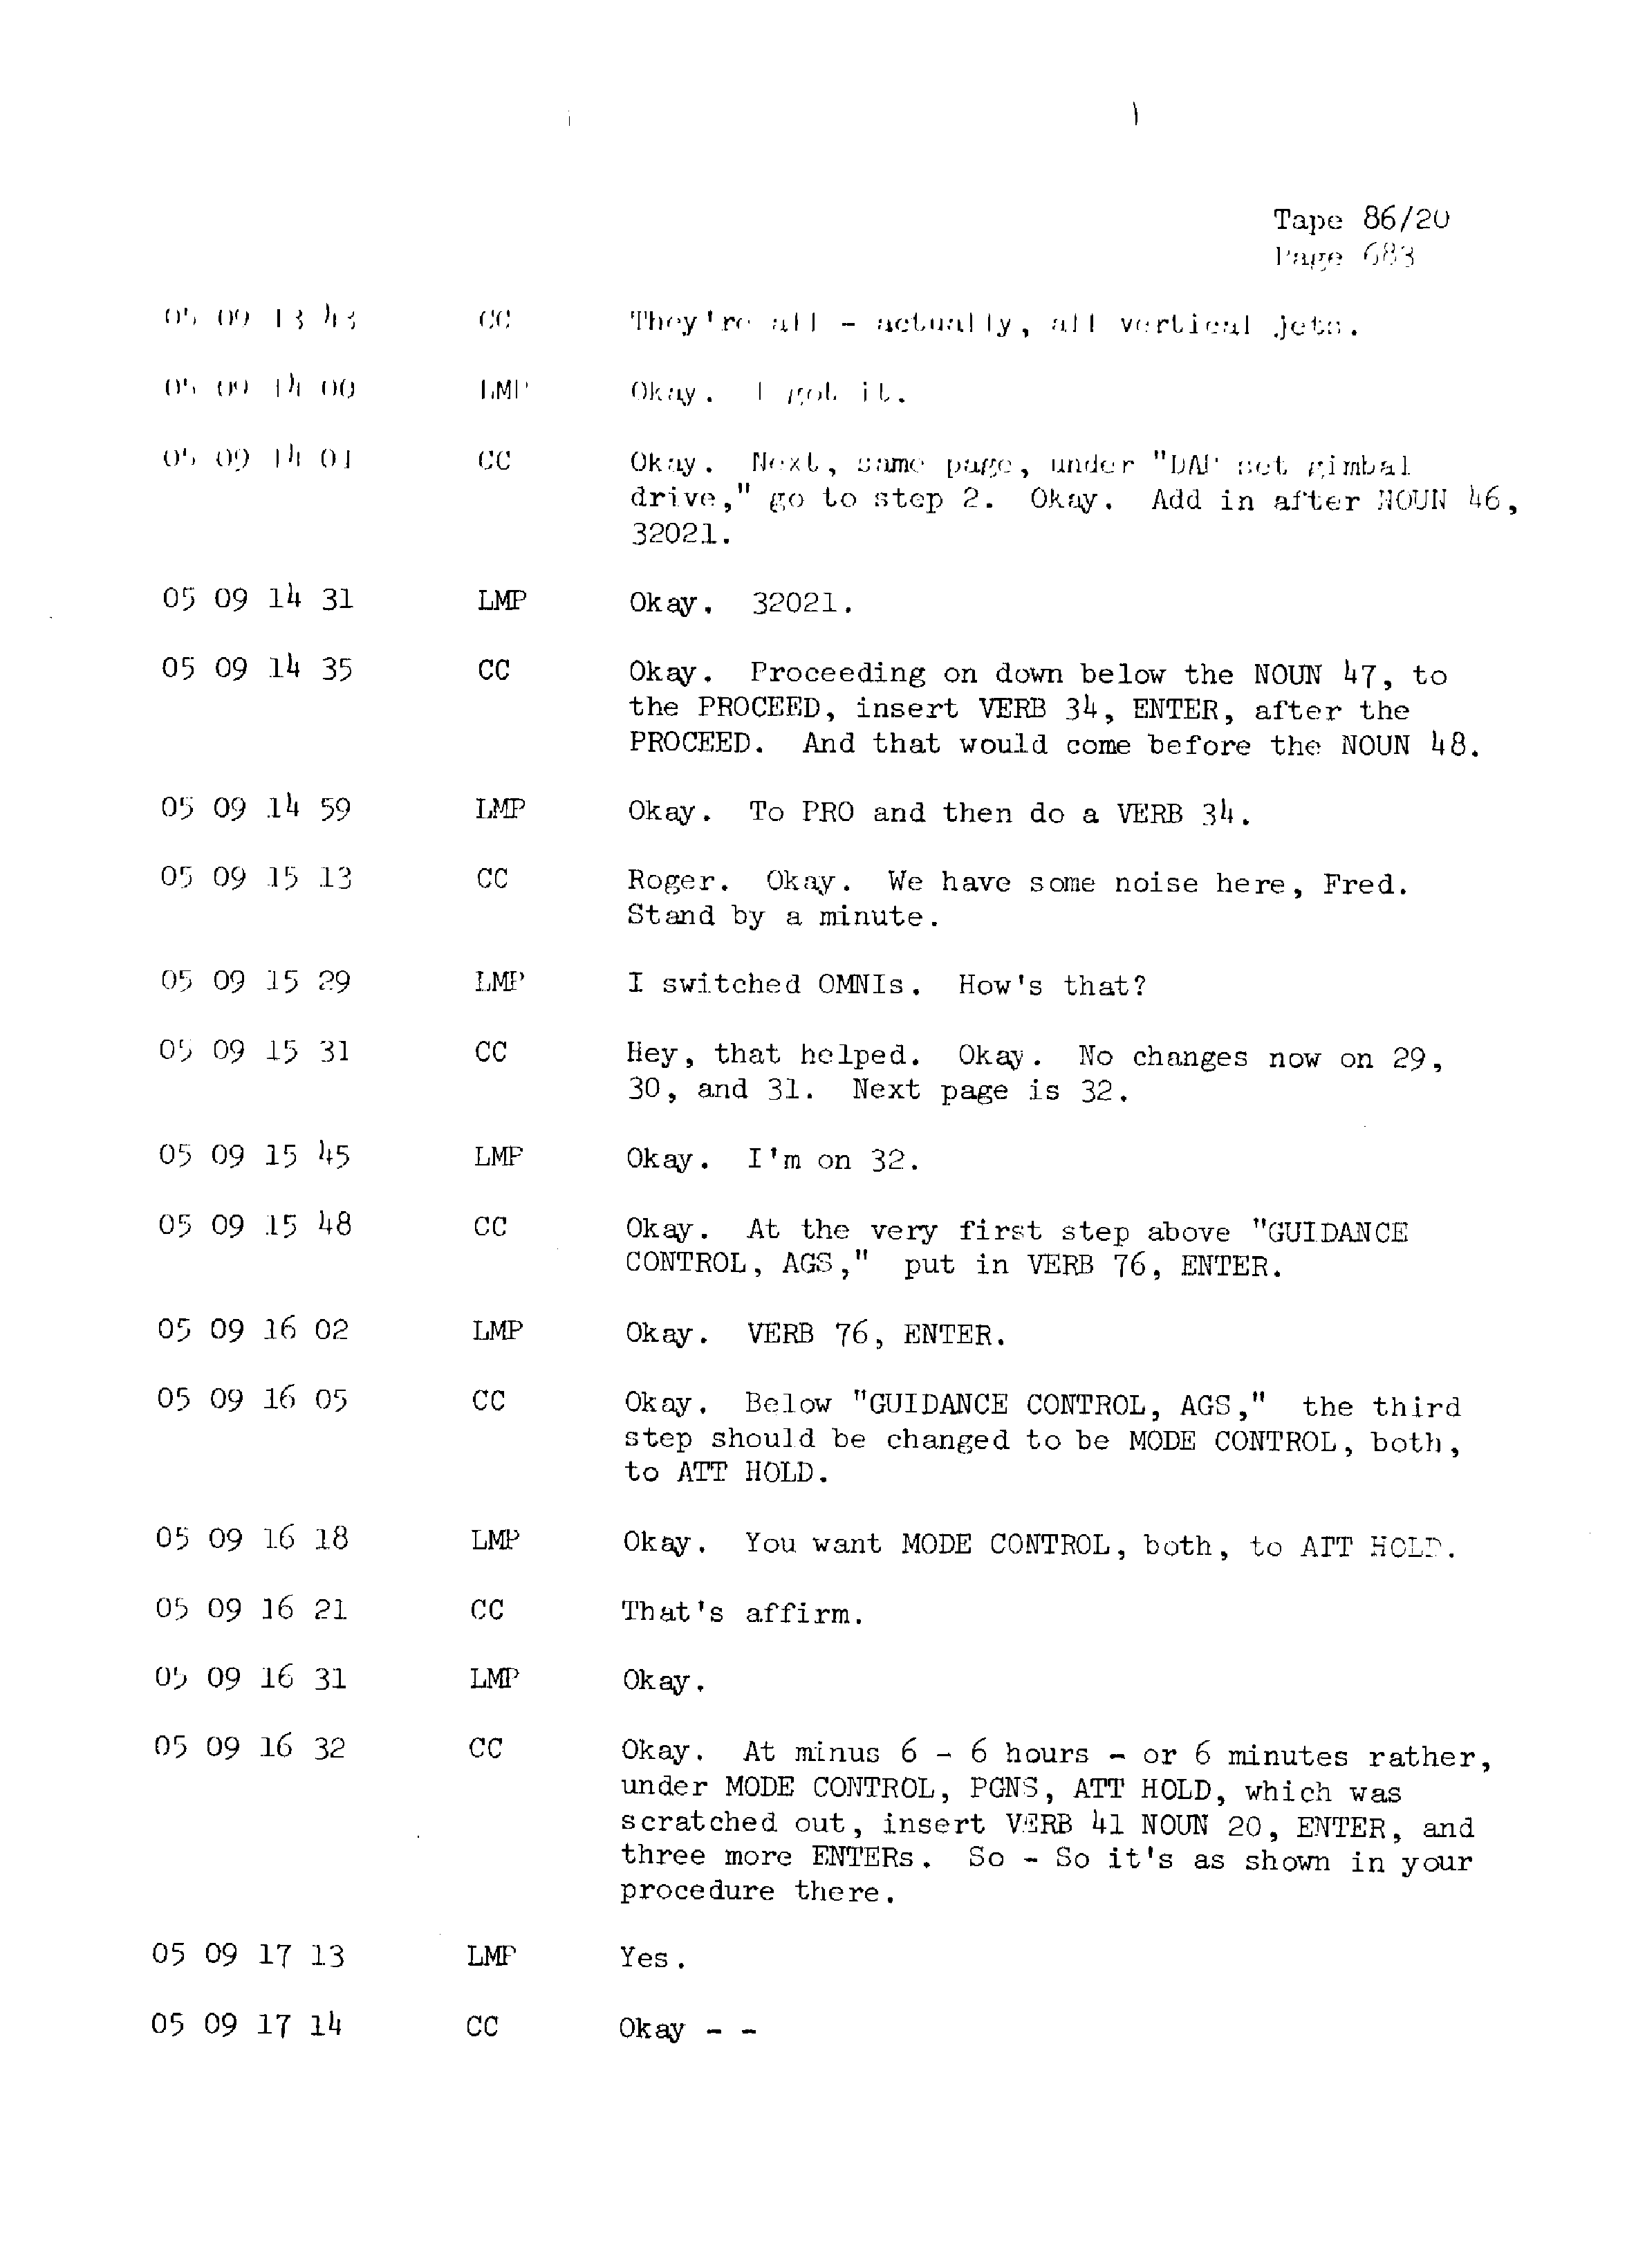 Page 690 of Apollo 13’s original transcript